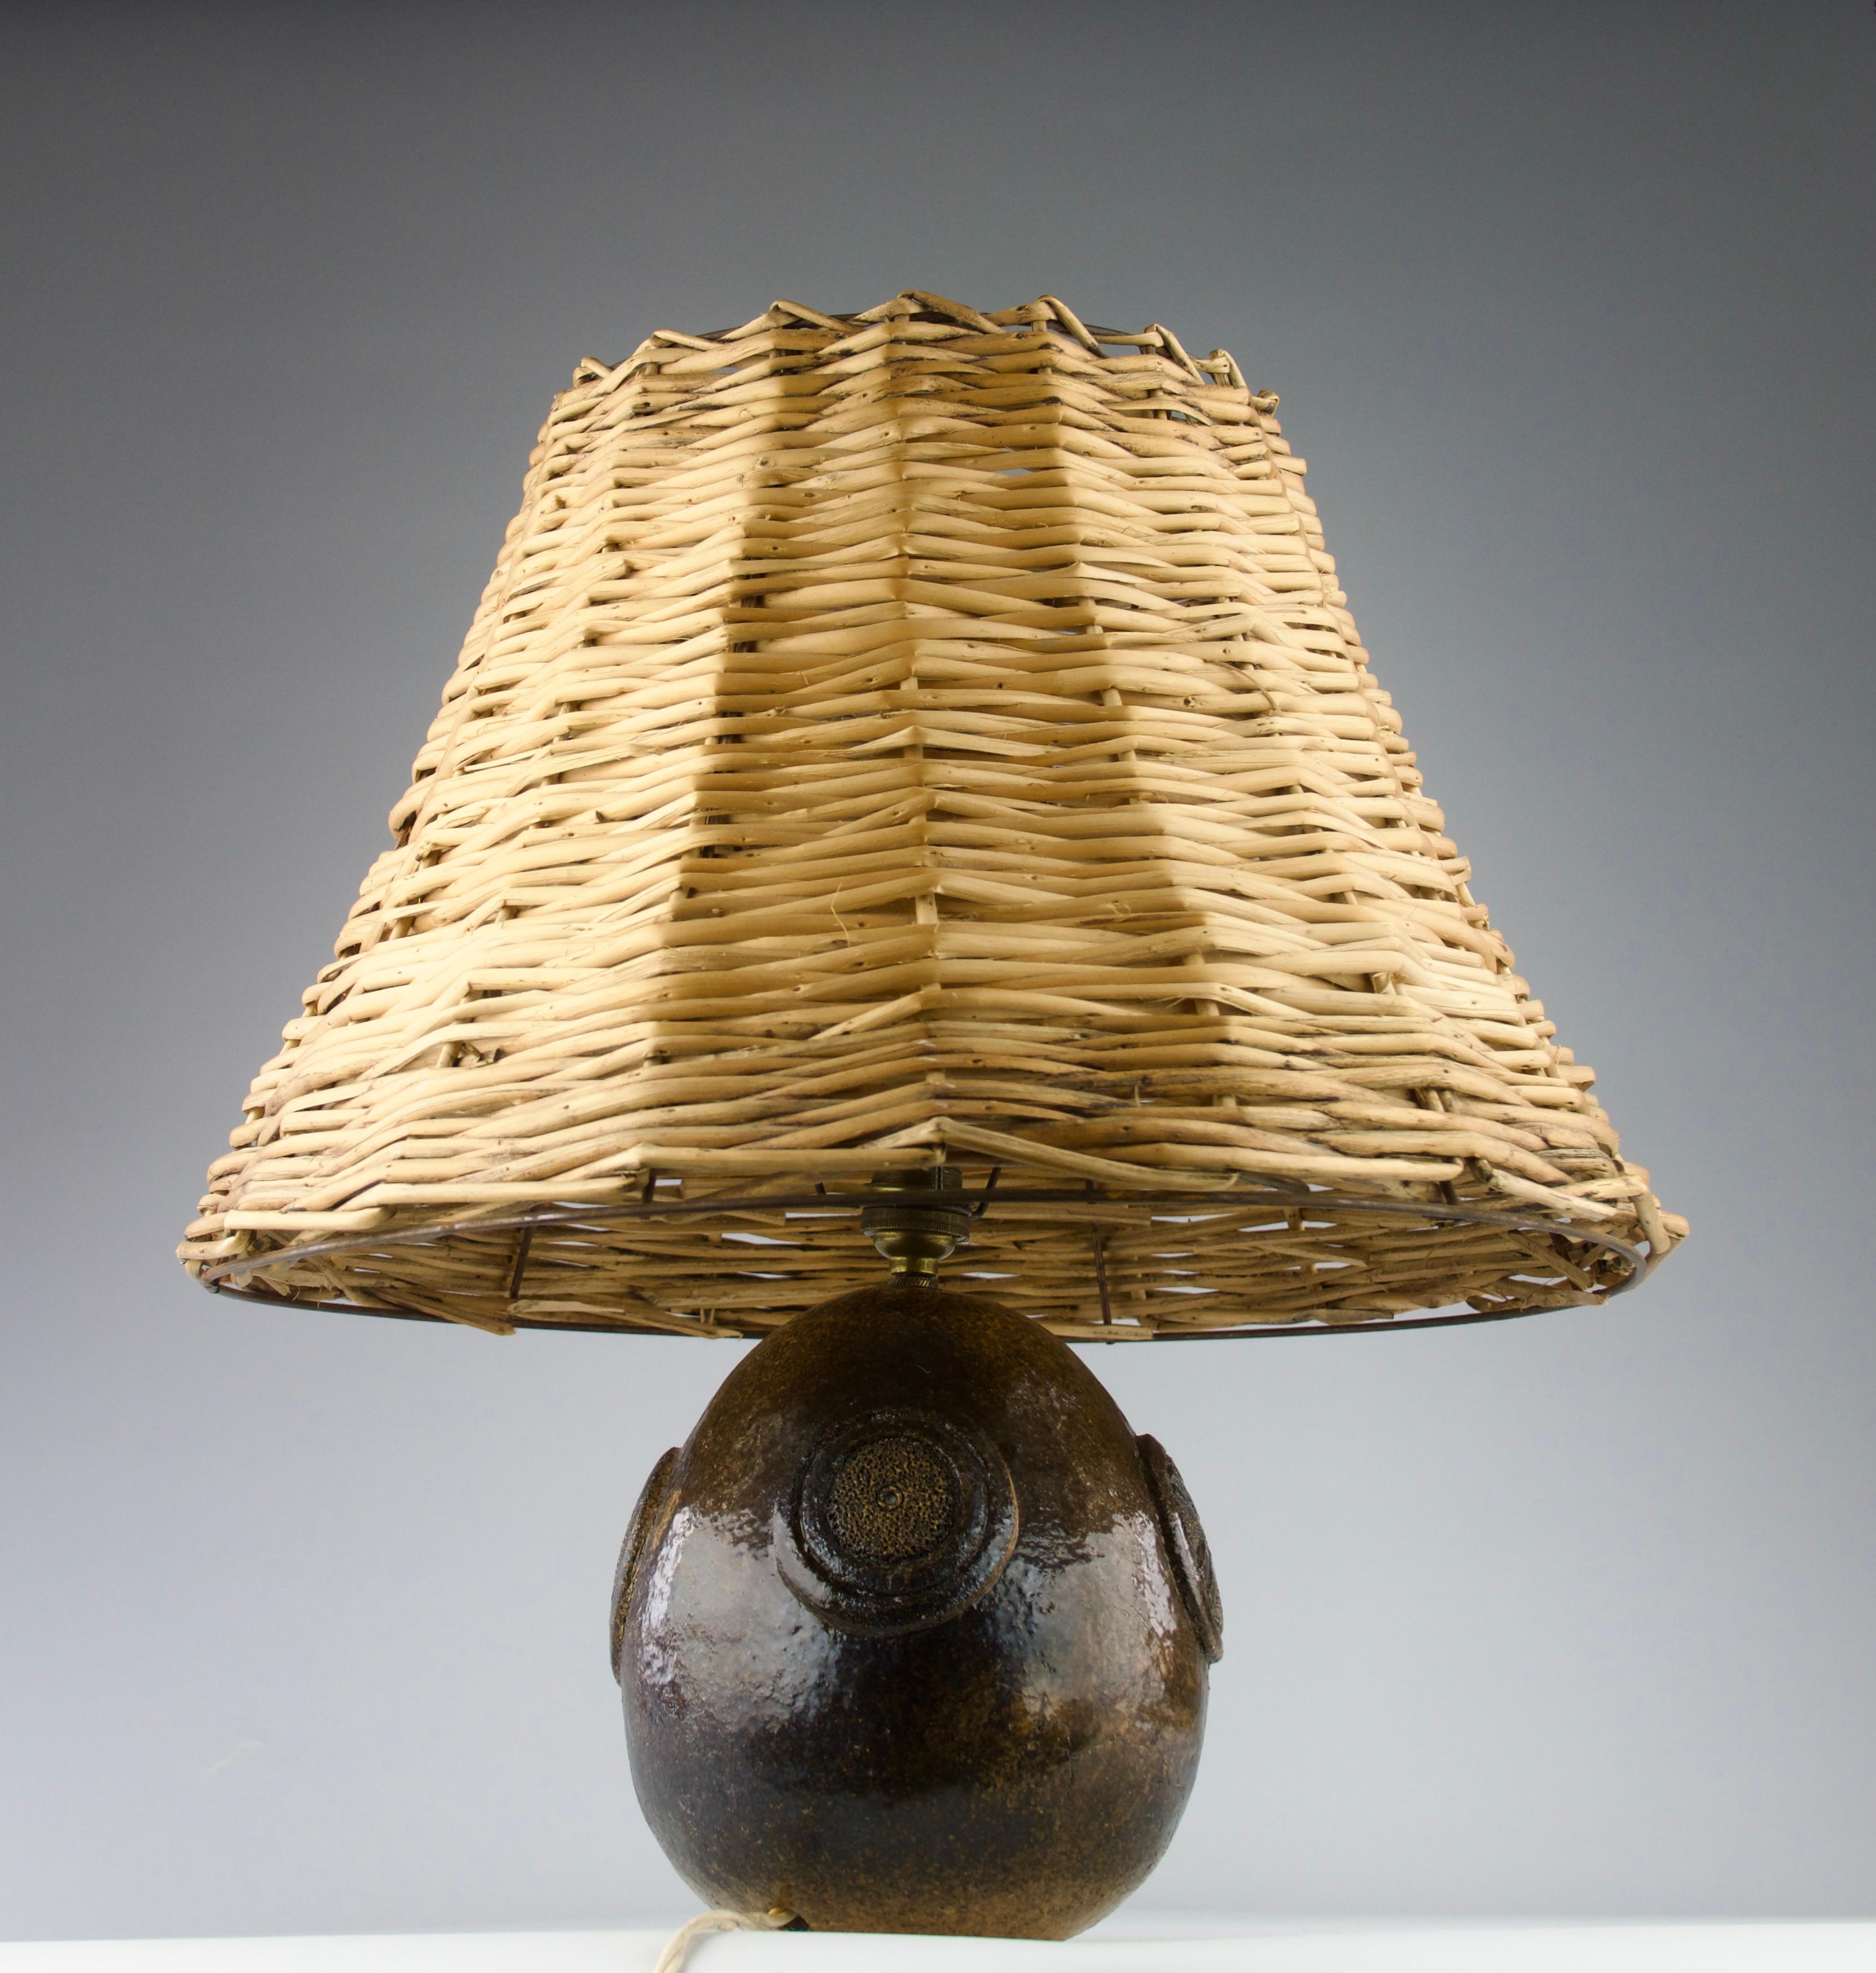 Belle lampe de table en céramique avec des motifs géométriques et un abat-jour en rotin, France années 1950.

Excellent état.

Dimensions en cm ( H x D ) : 44 x 40.5
Dimensions de la base en céramique en cm ( H x D&H) : 17 x 15, avec le luminaire